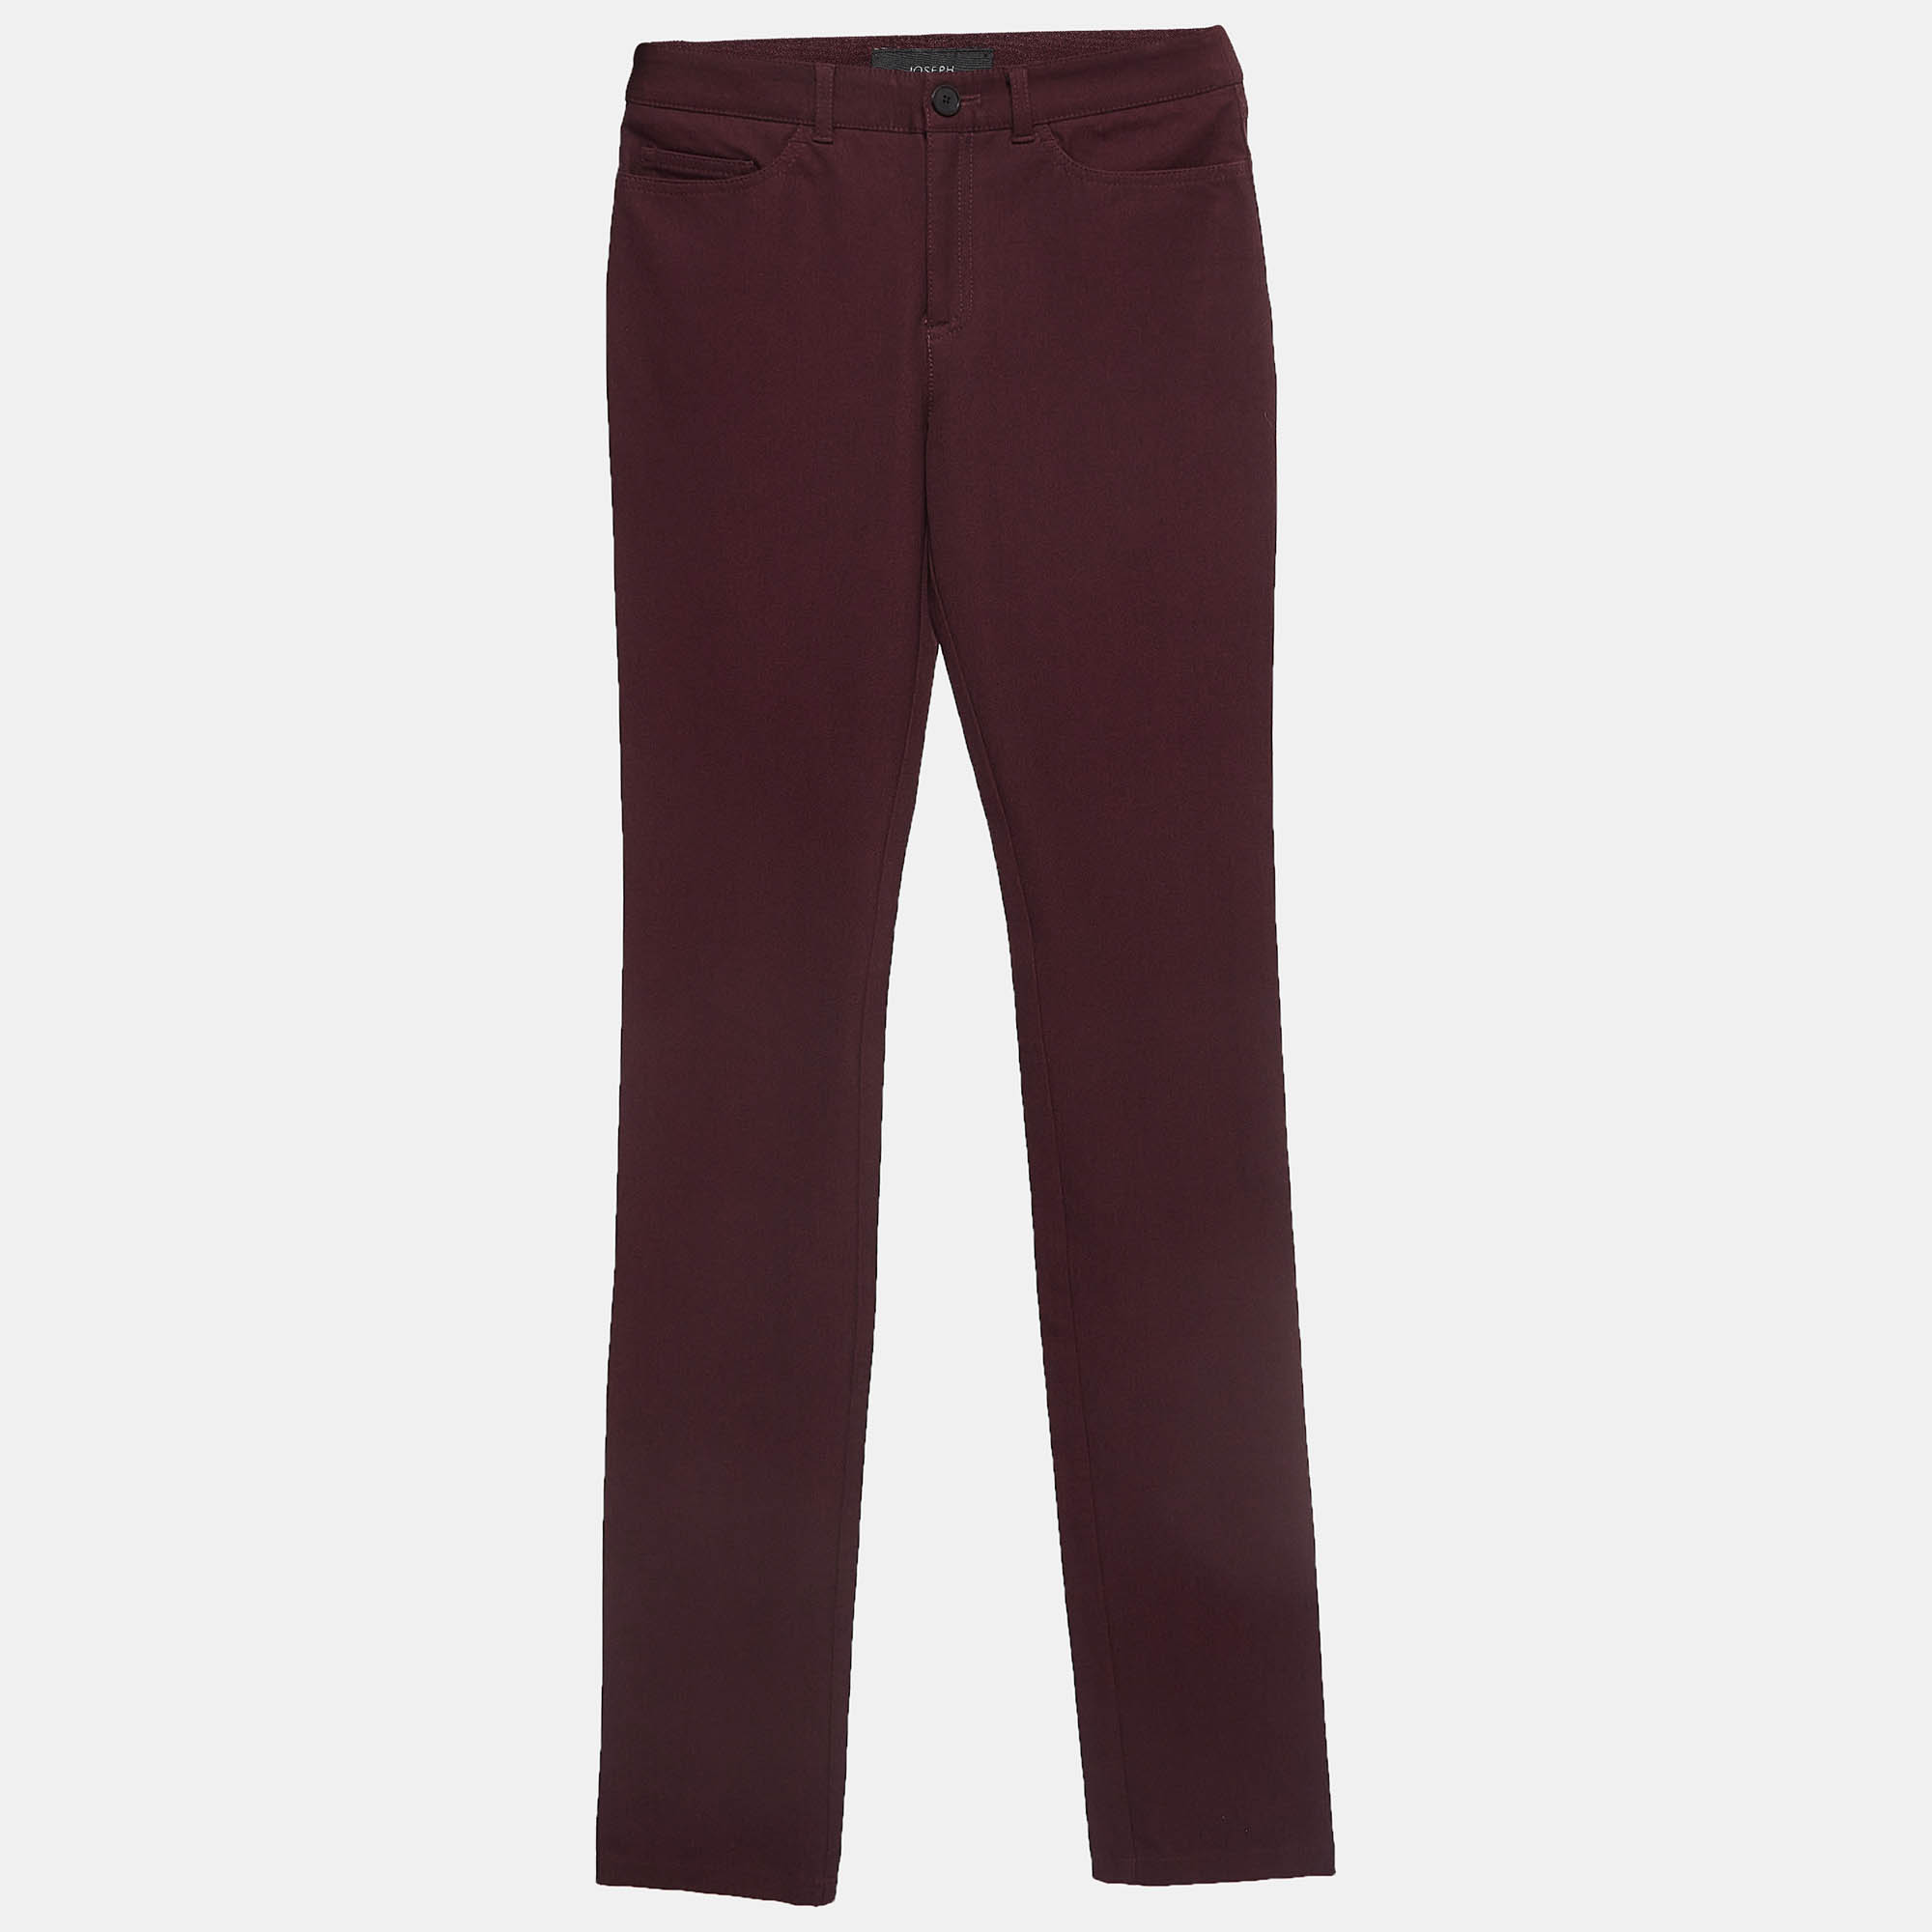 Joseph burgundy stretch knit skinny jeans s waist 24"